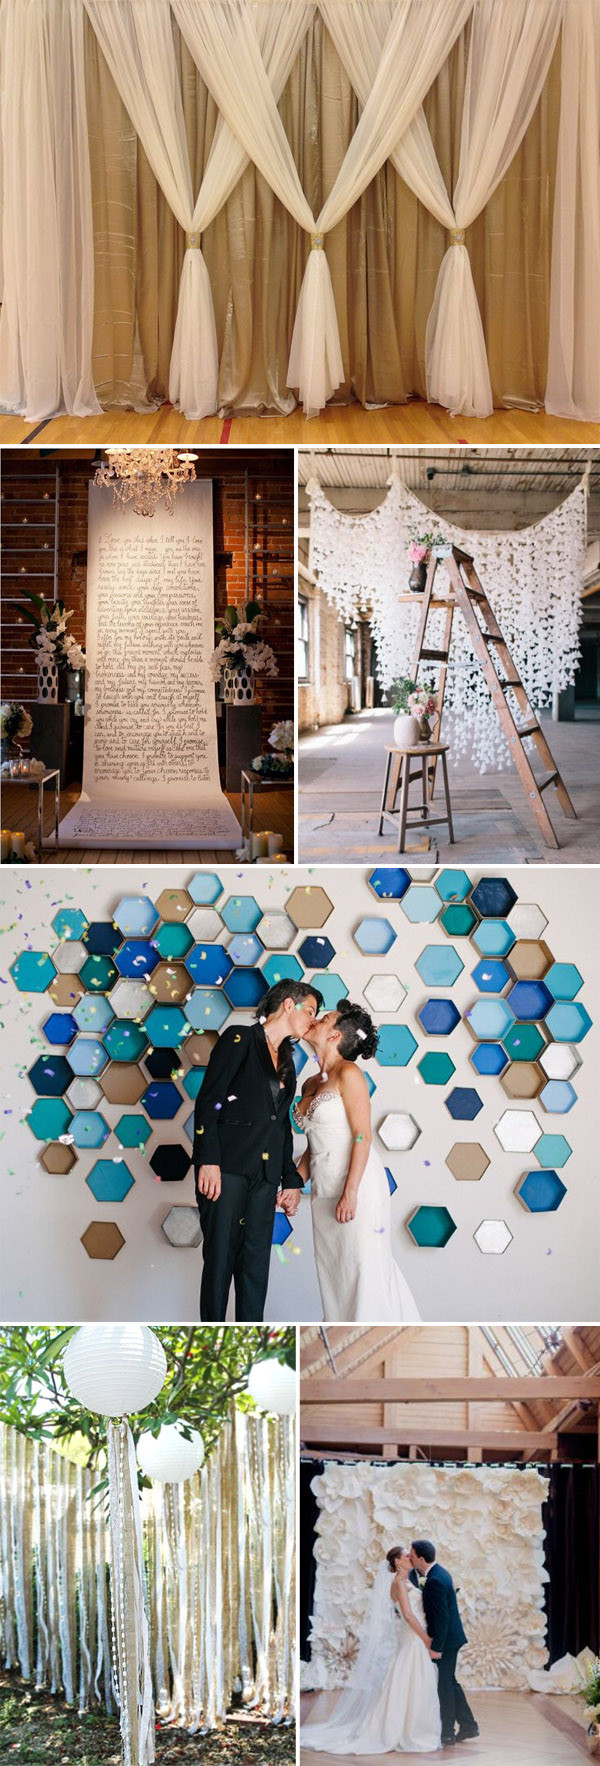 DIY Backdrop For Wedding
 Top 20 Unique Backdrops For Wedding Ceremony Ideas